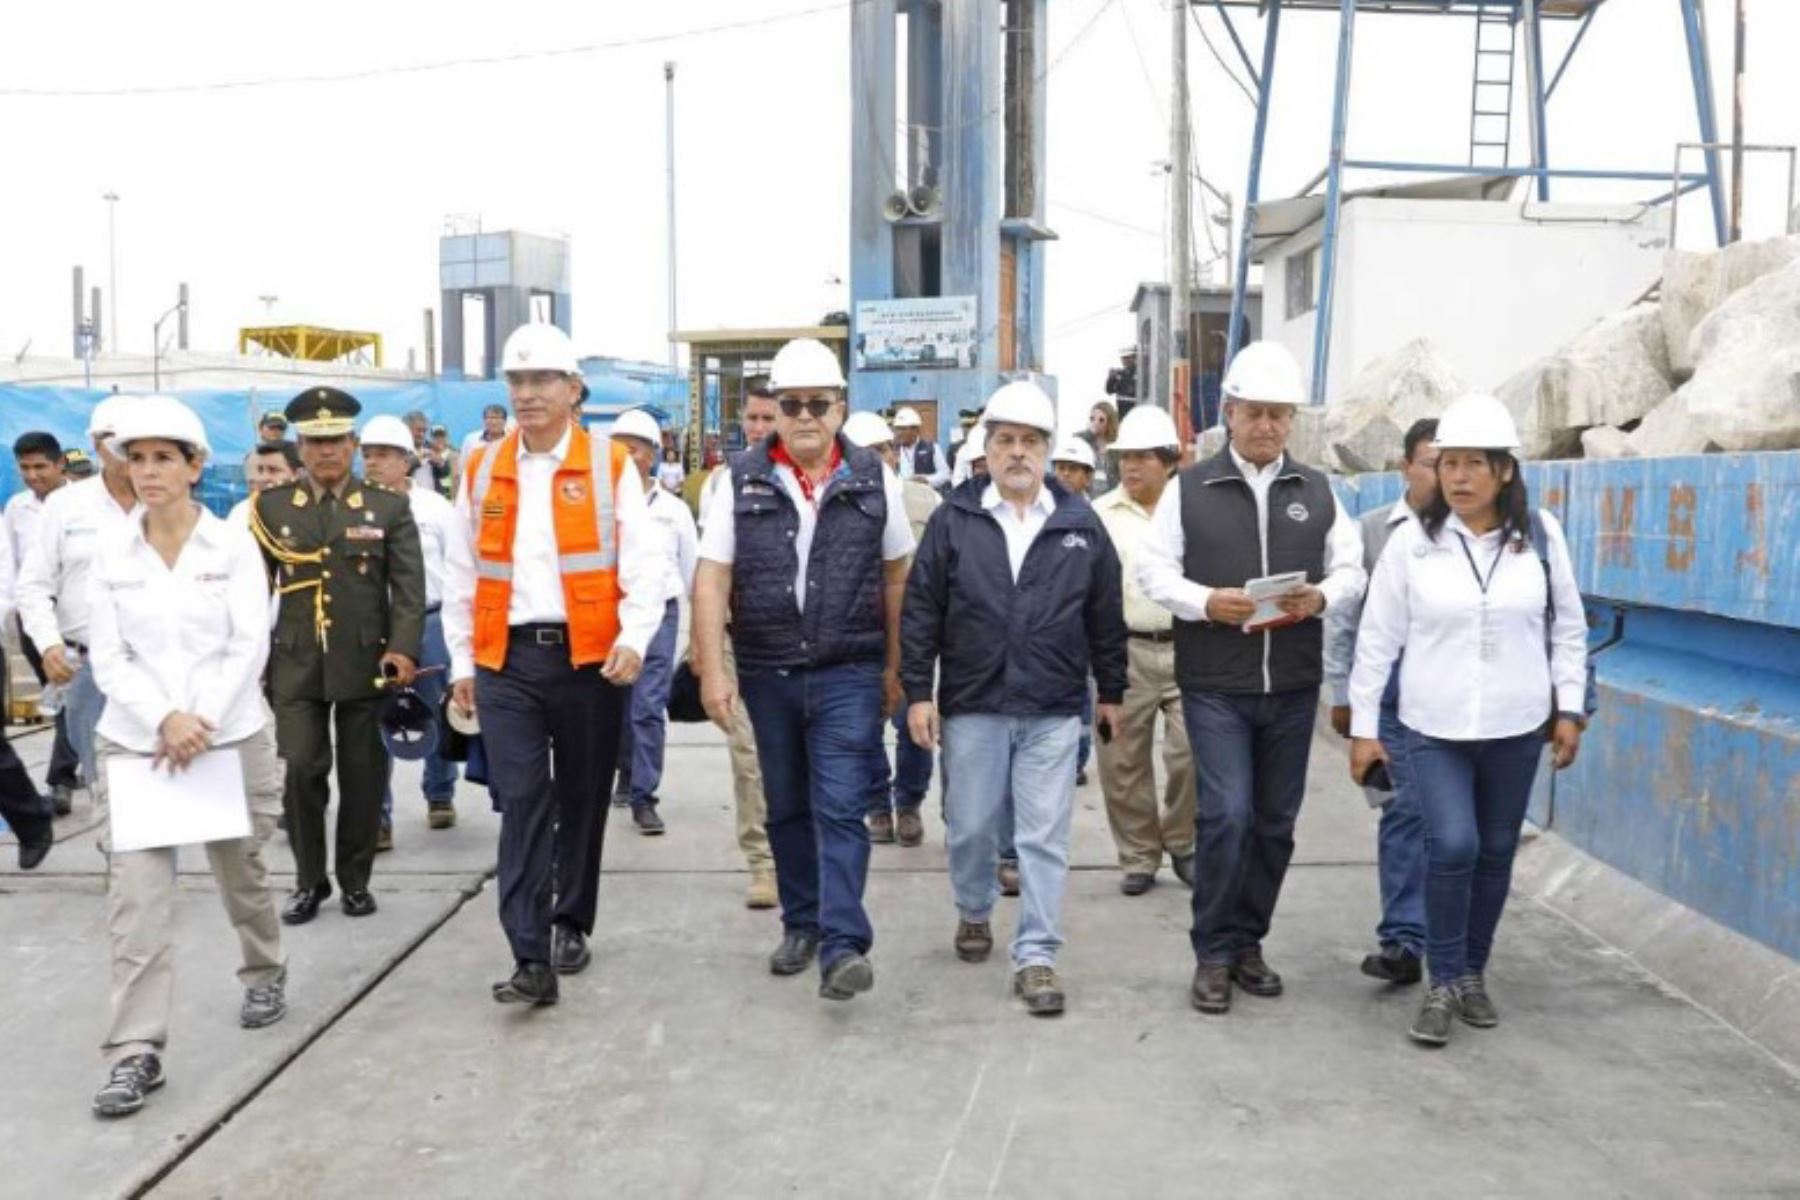 El Ministerio de la Producción (Produce) informó que las obras de mejoramiento del Desembarcadero Pesquero Artesanal de Ilo, en la región Moquegua, concluirán en diciembre de este año. A la fecha el proyecto tiene un avance físico de 15%.